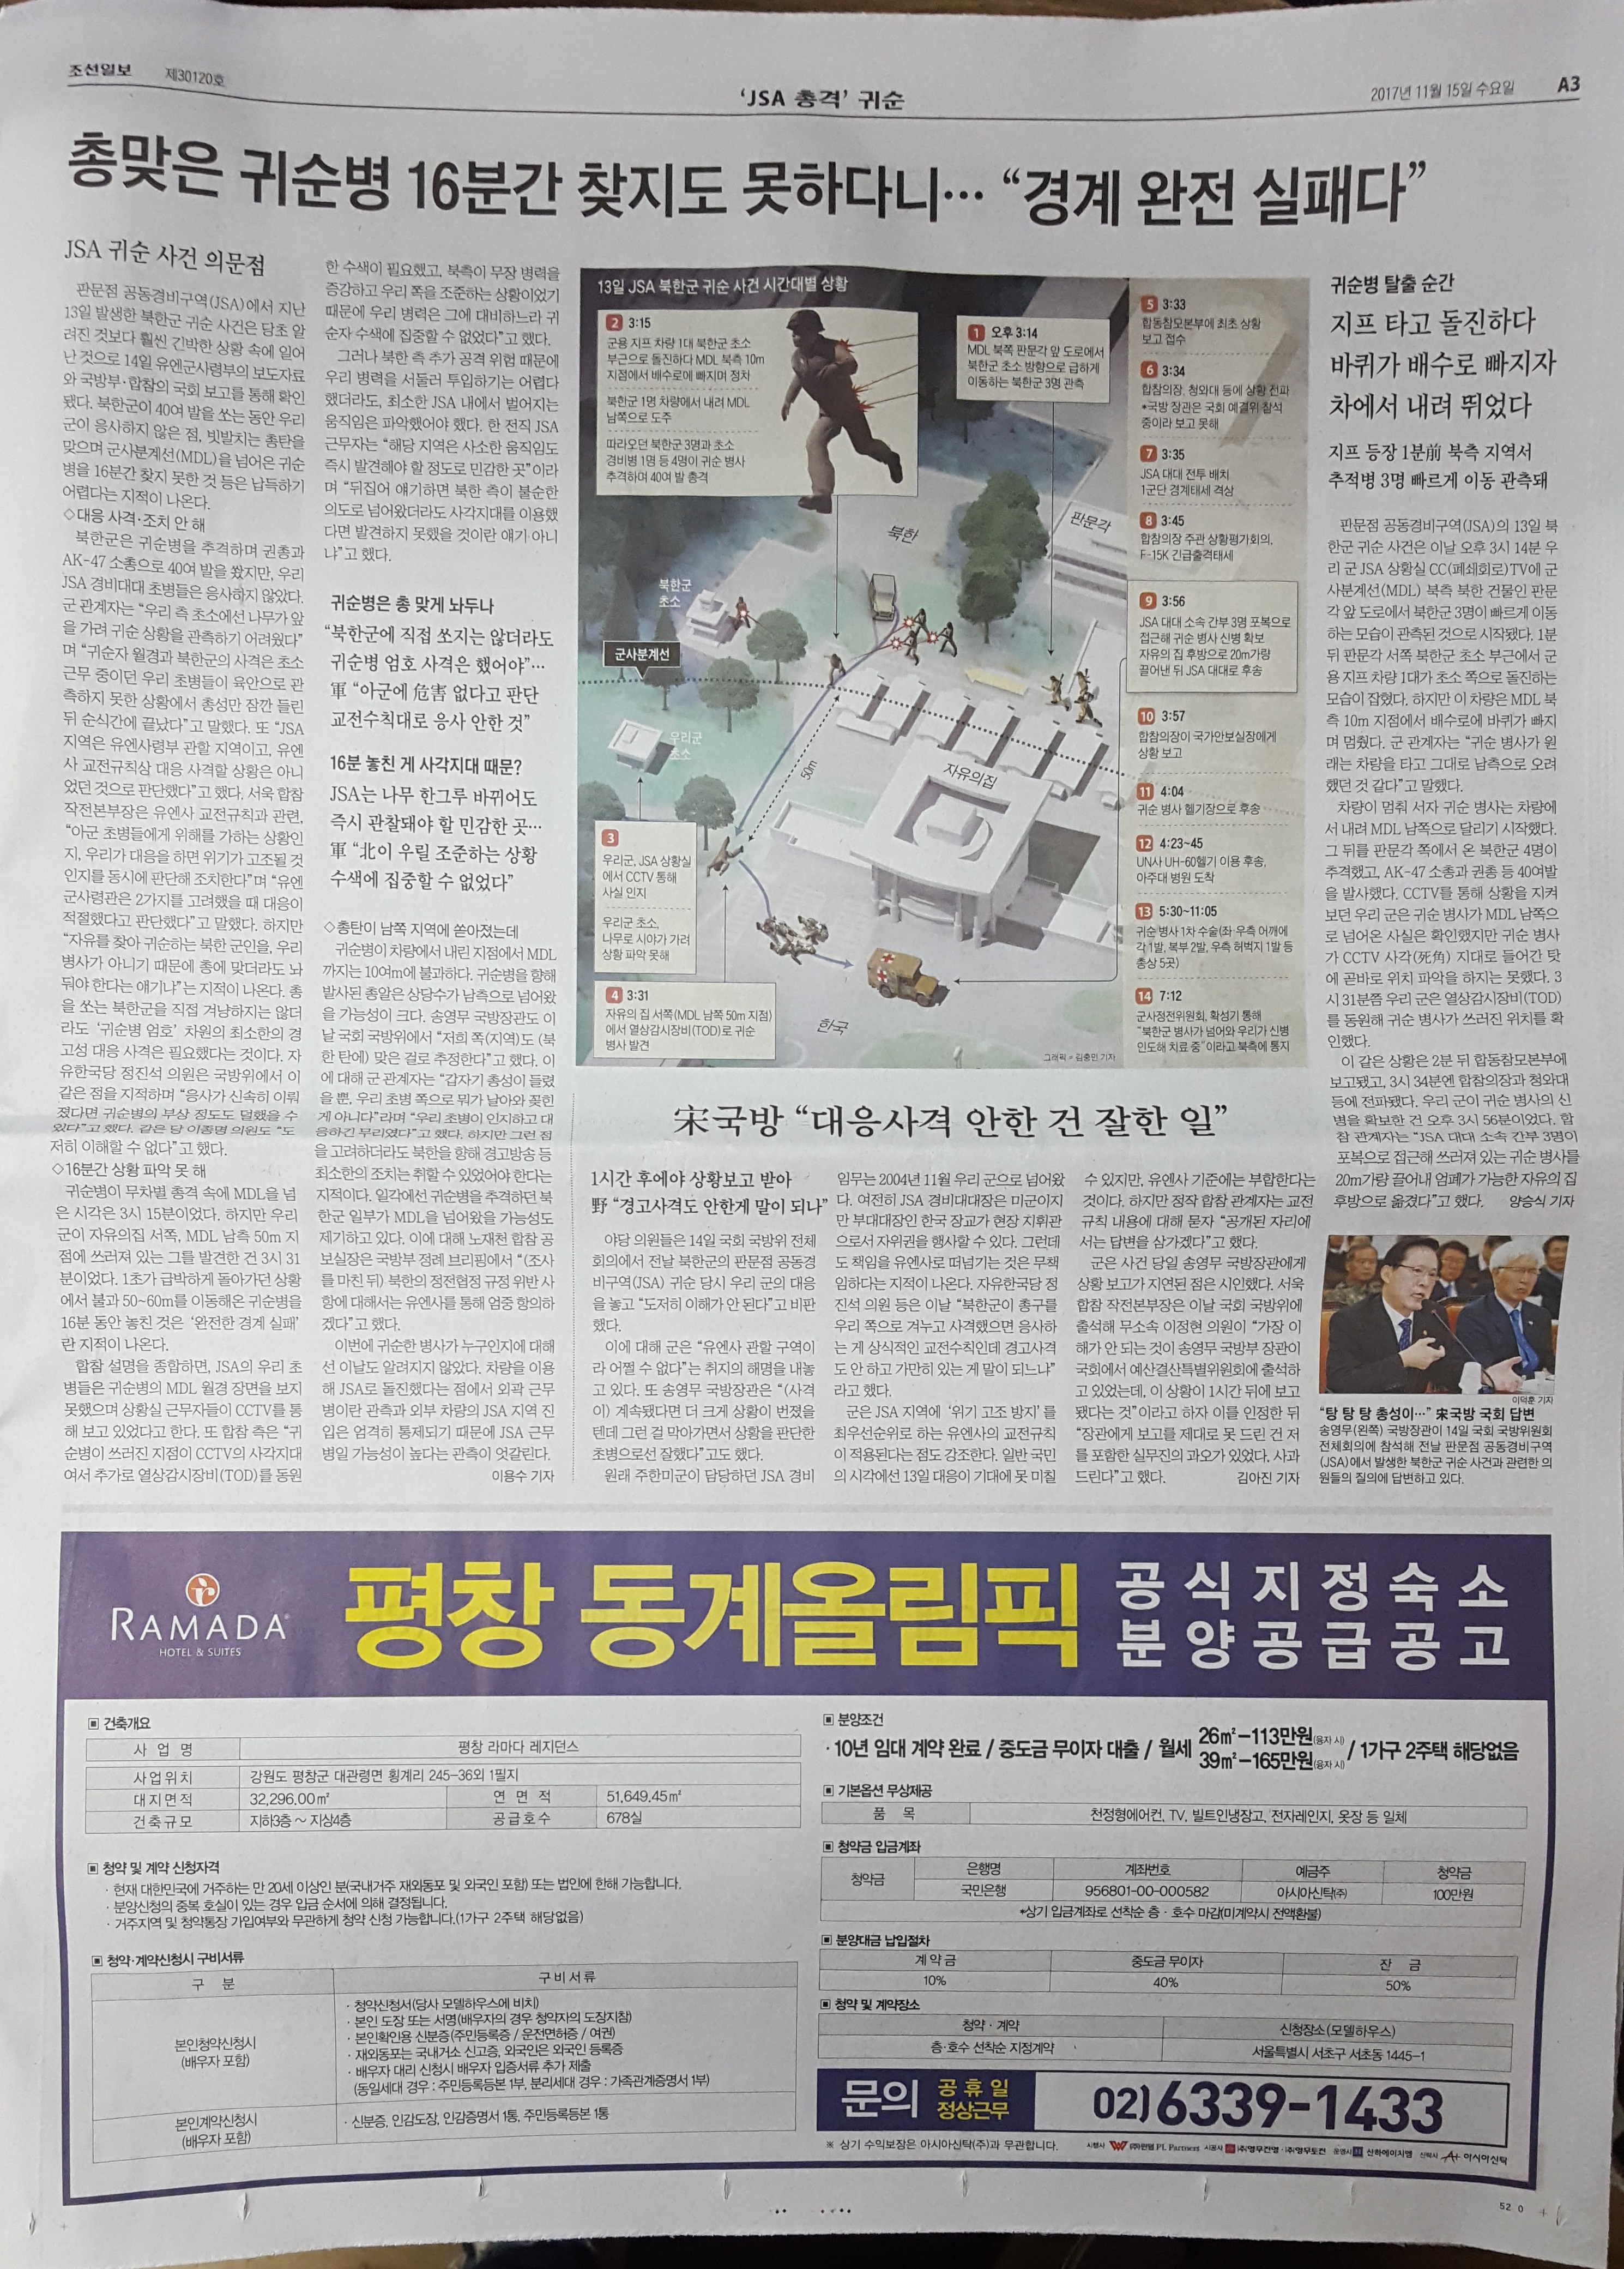 11월 15일 조선일보 A3 평창 라마다호텔 - 5단통.jpg